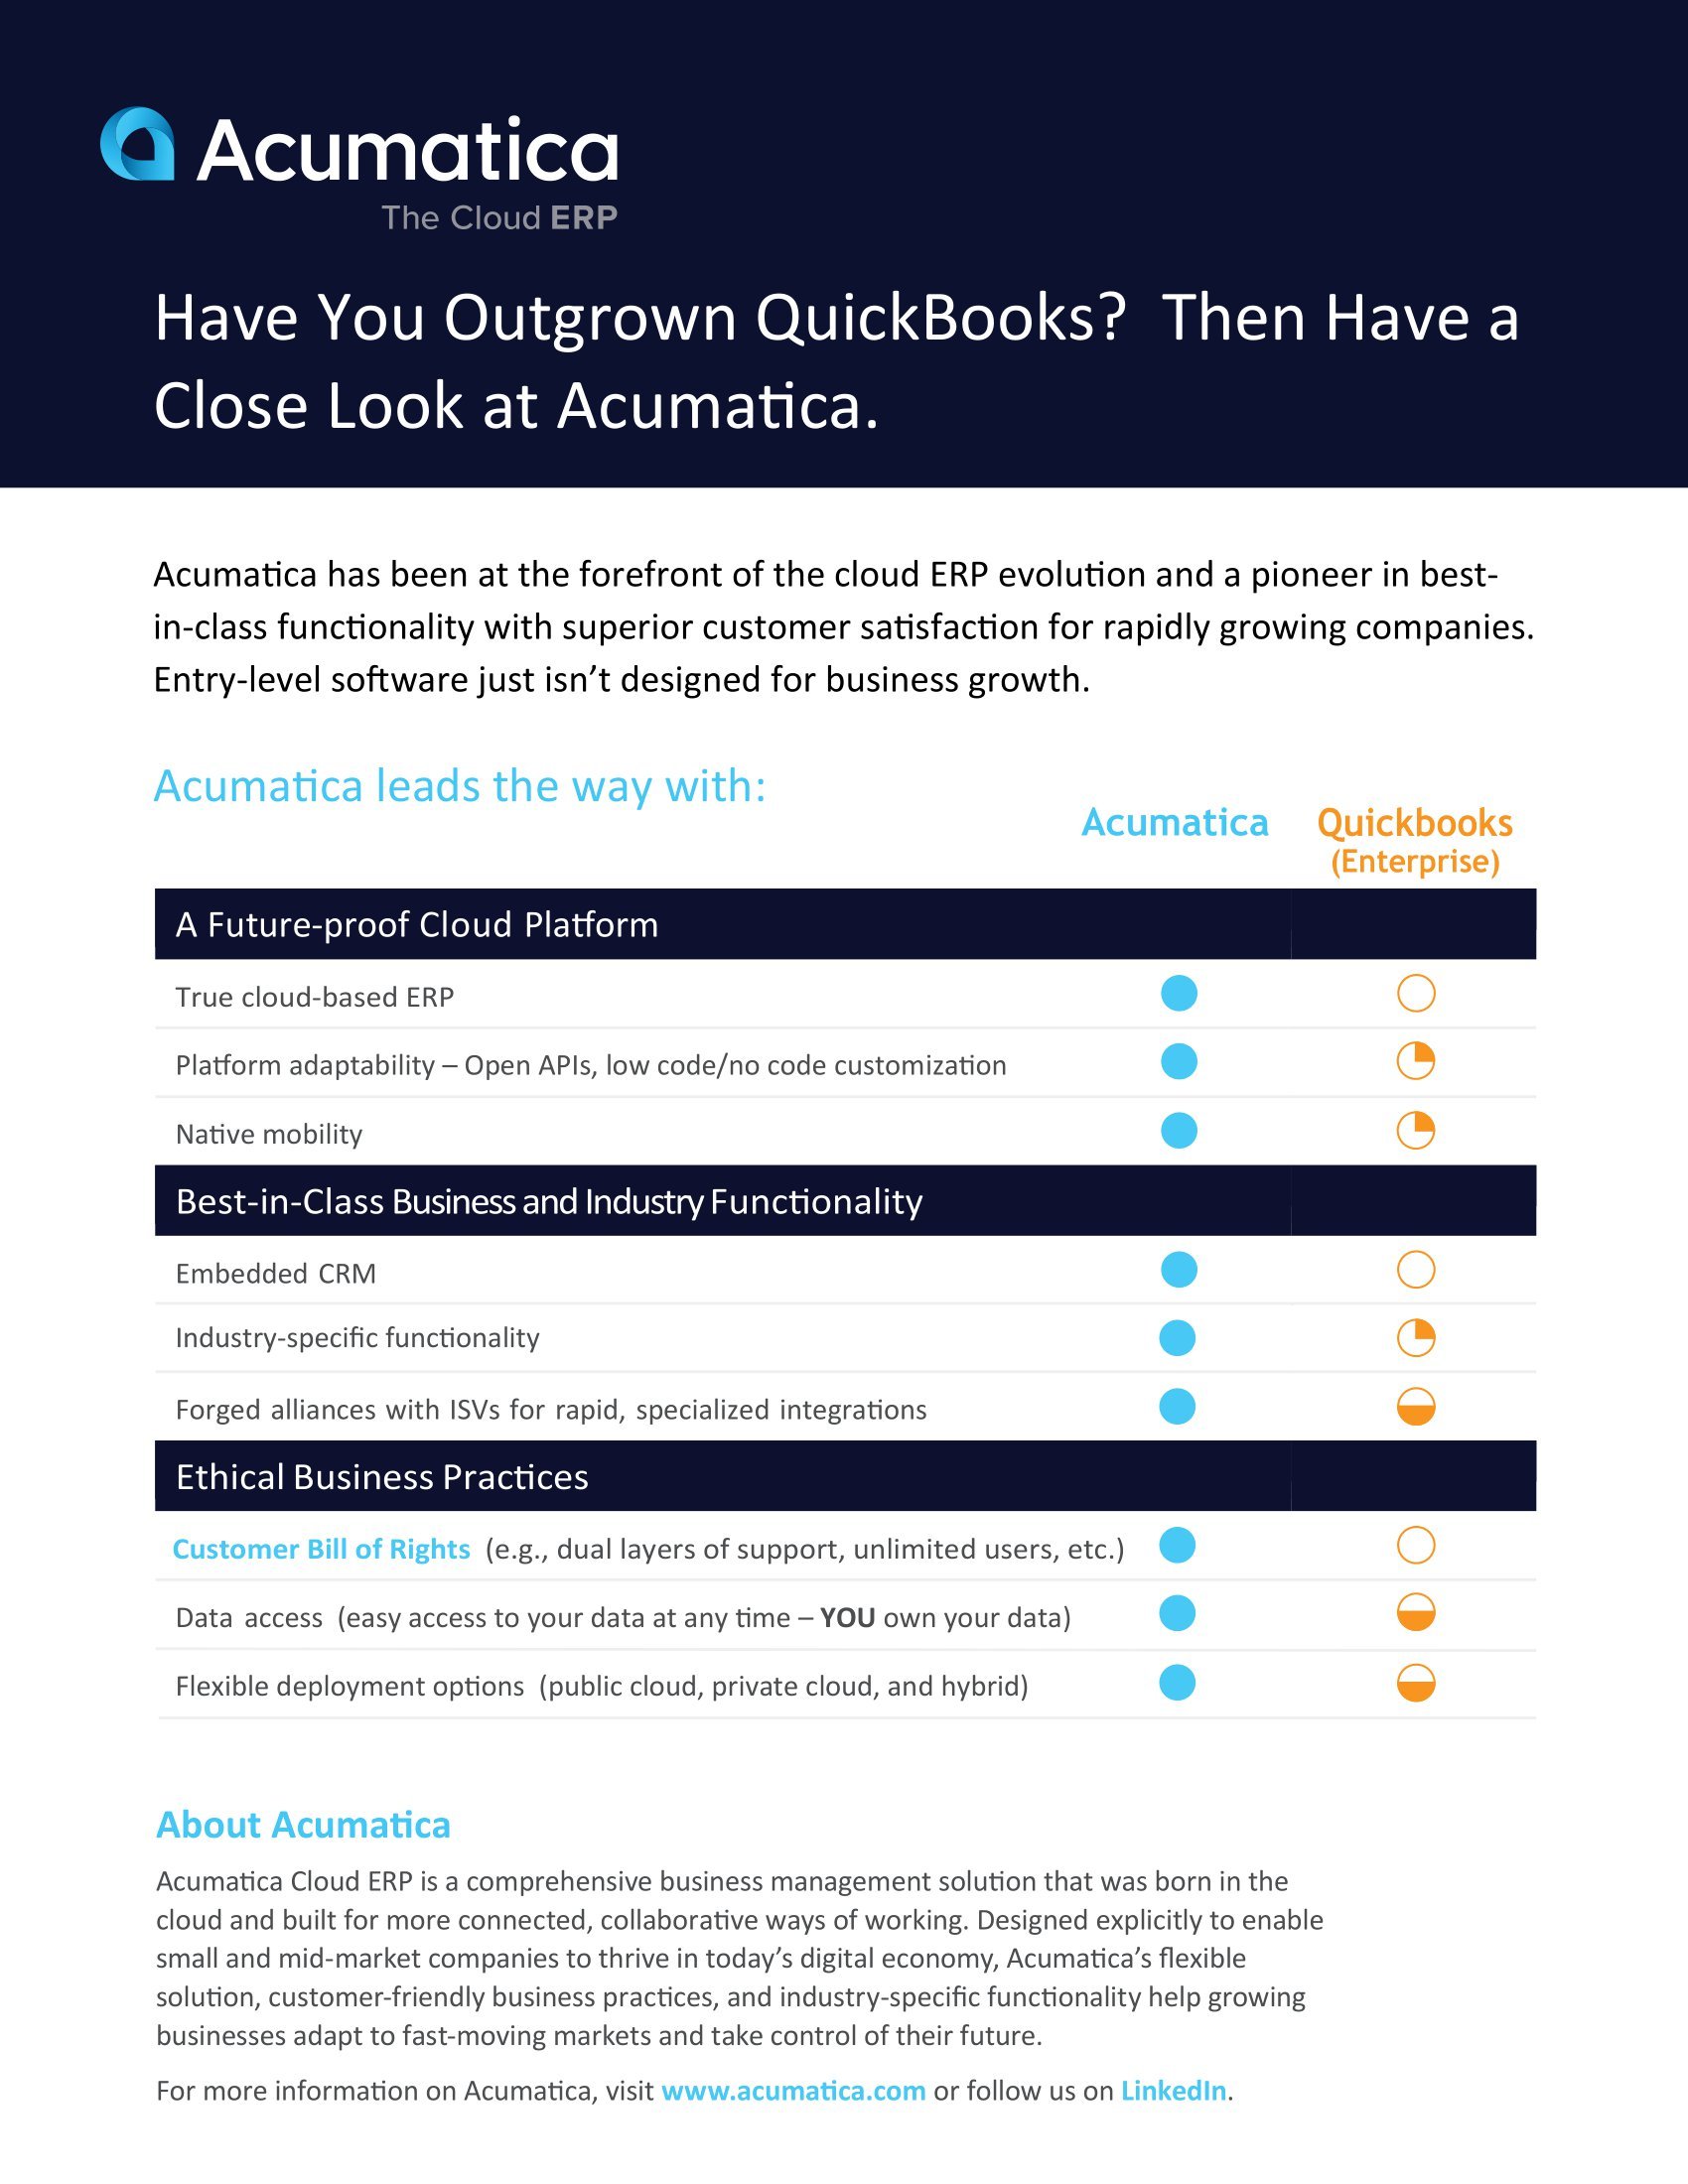 Acumatica vs. QuickBooks